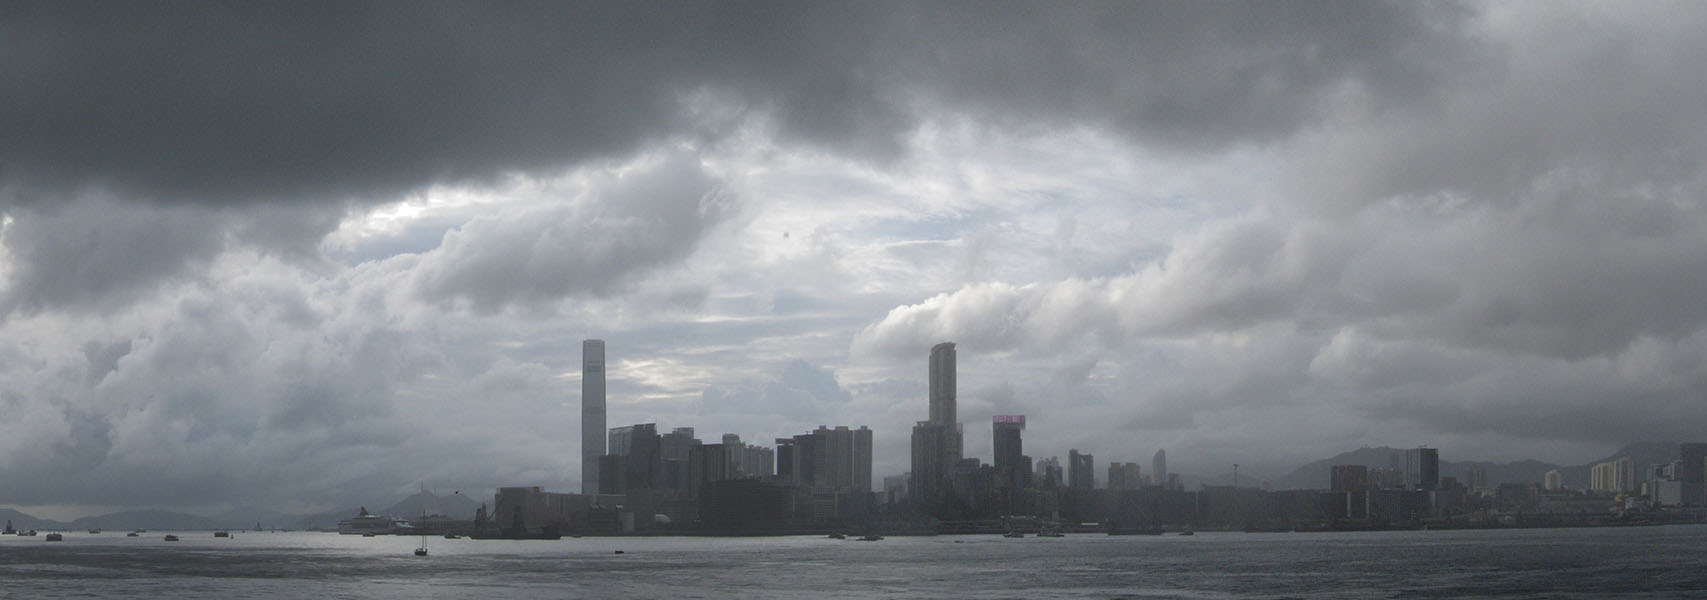 Moody, Cloudy, Panorama of Hong Kong Harbor